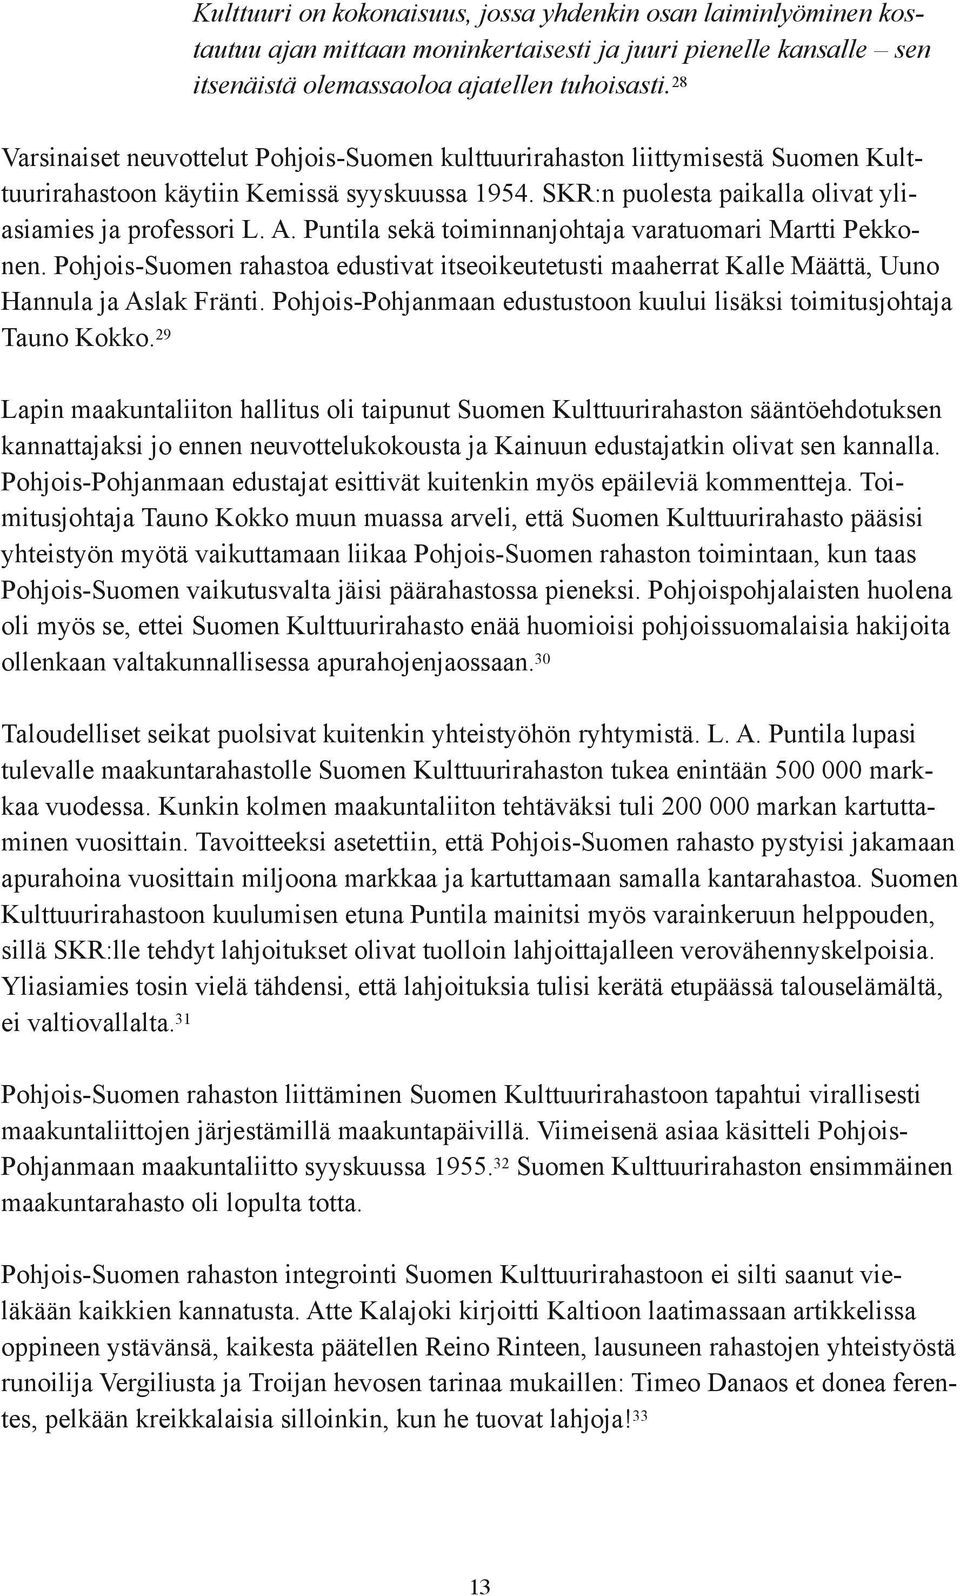 Puntila sekä toiminnanjohtaja varatuomari Martti Pekkonen. Pohjois-Suomen rahastoa edustivat itseoikeutetusti maaherrat Kalle Määttä, Uuno Hannula ja Aslak Fränti.